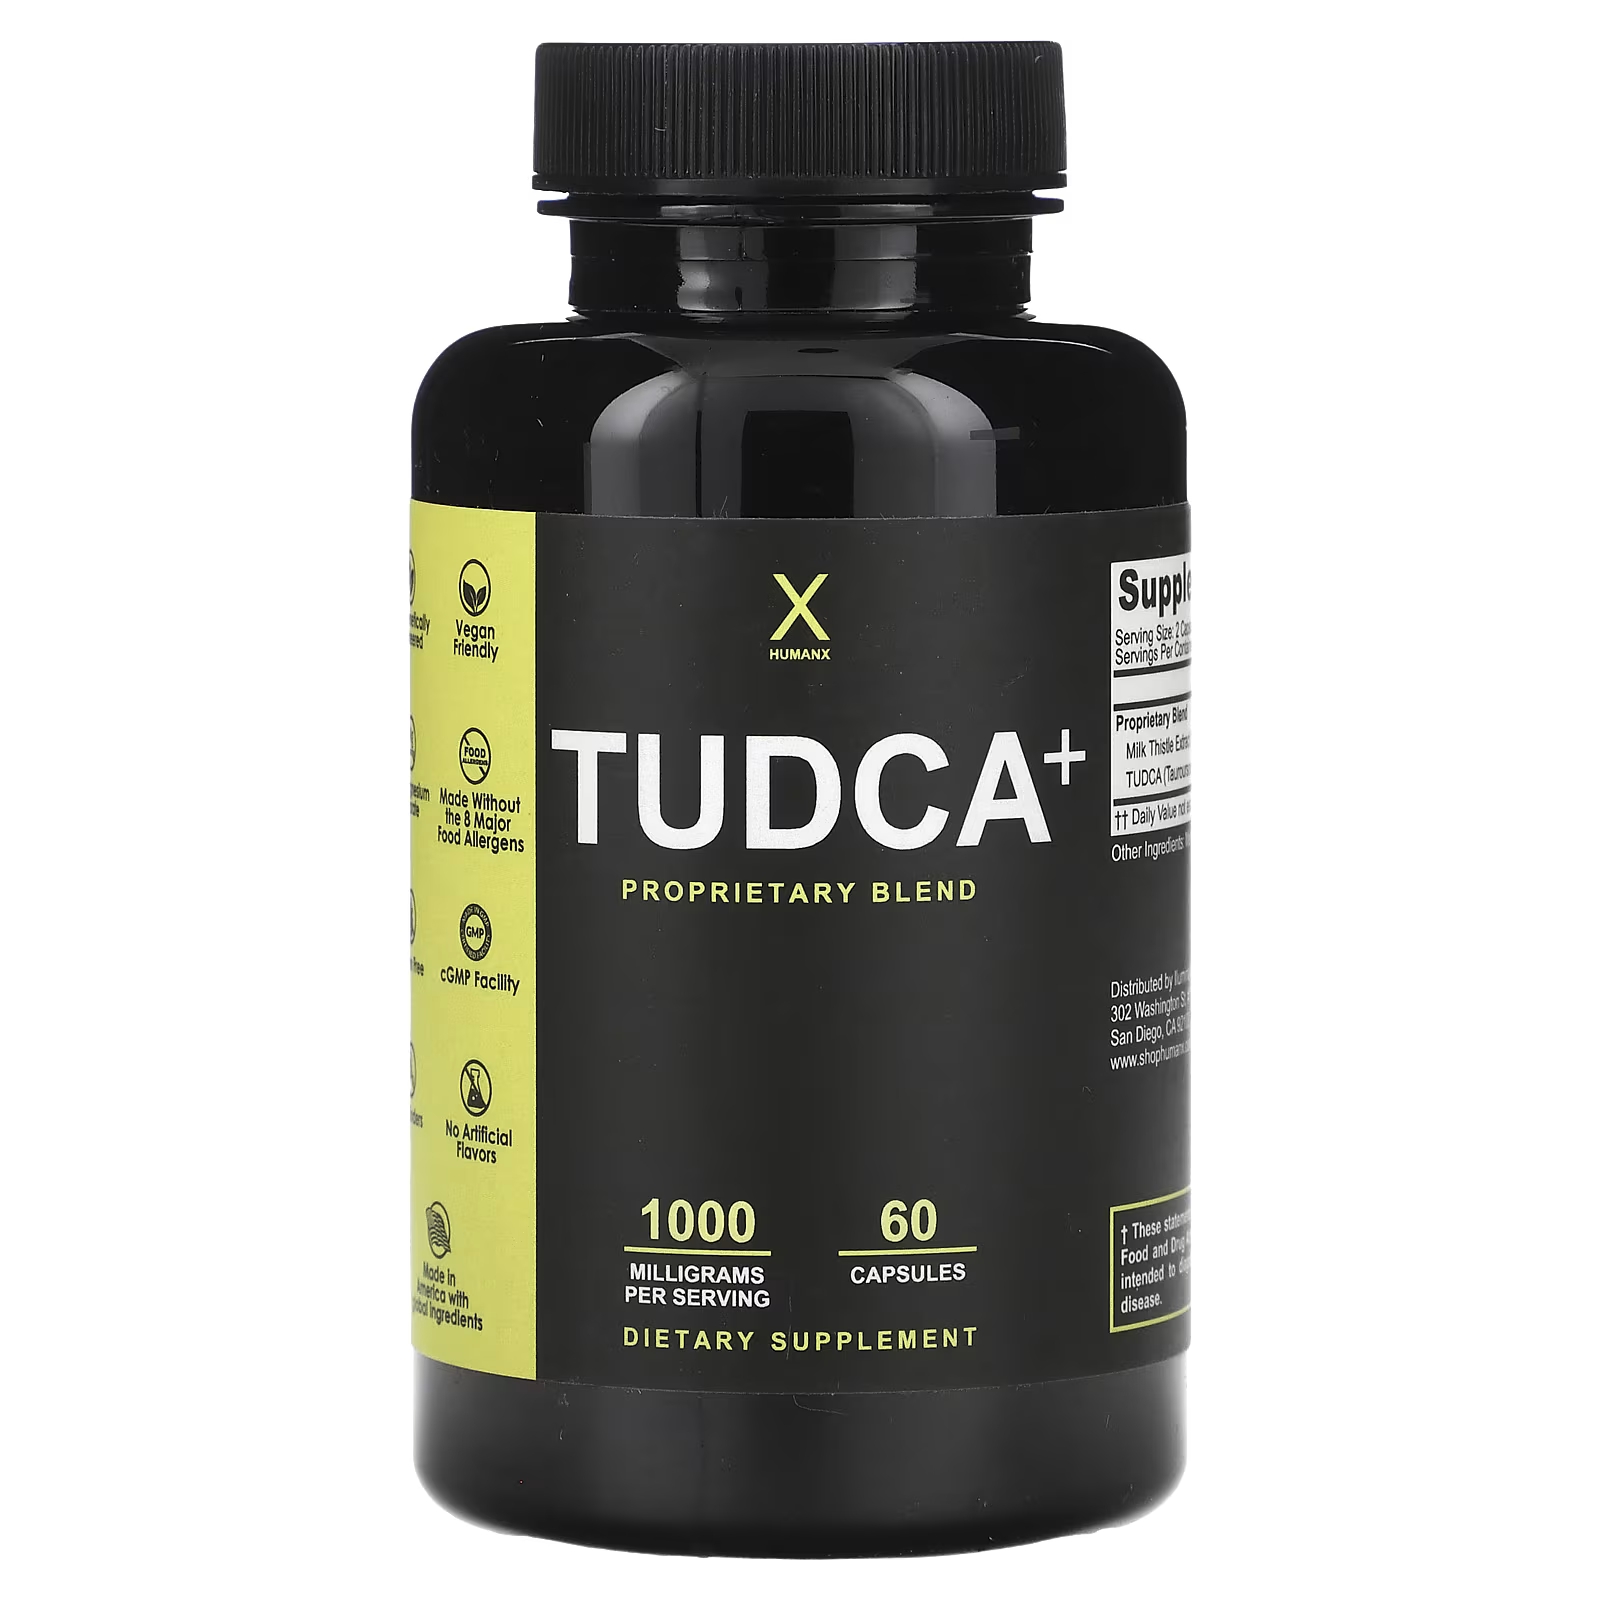 Пищевая добавка Humanx Tudca+ для печени, 60 капсул